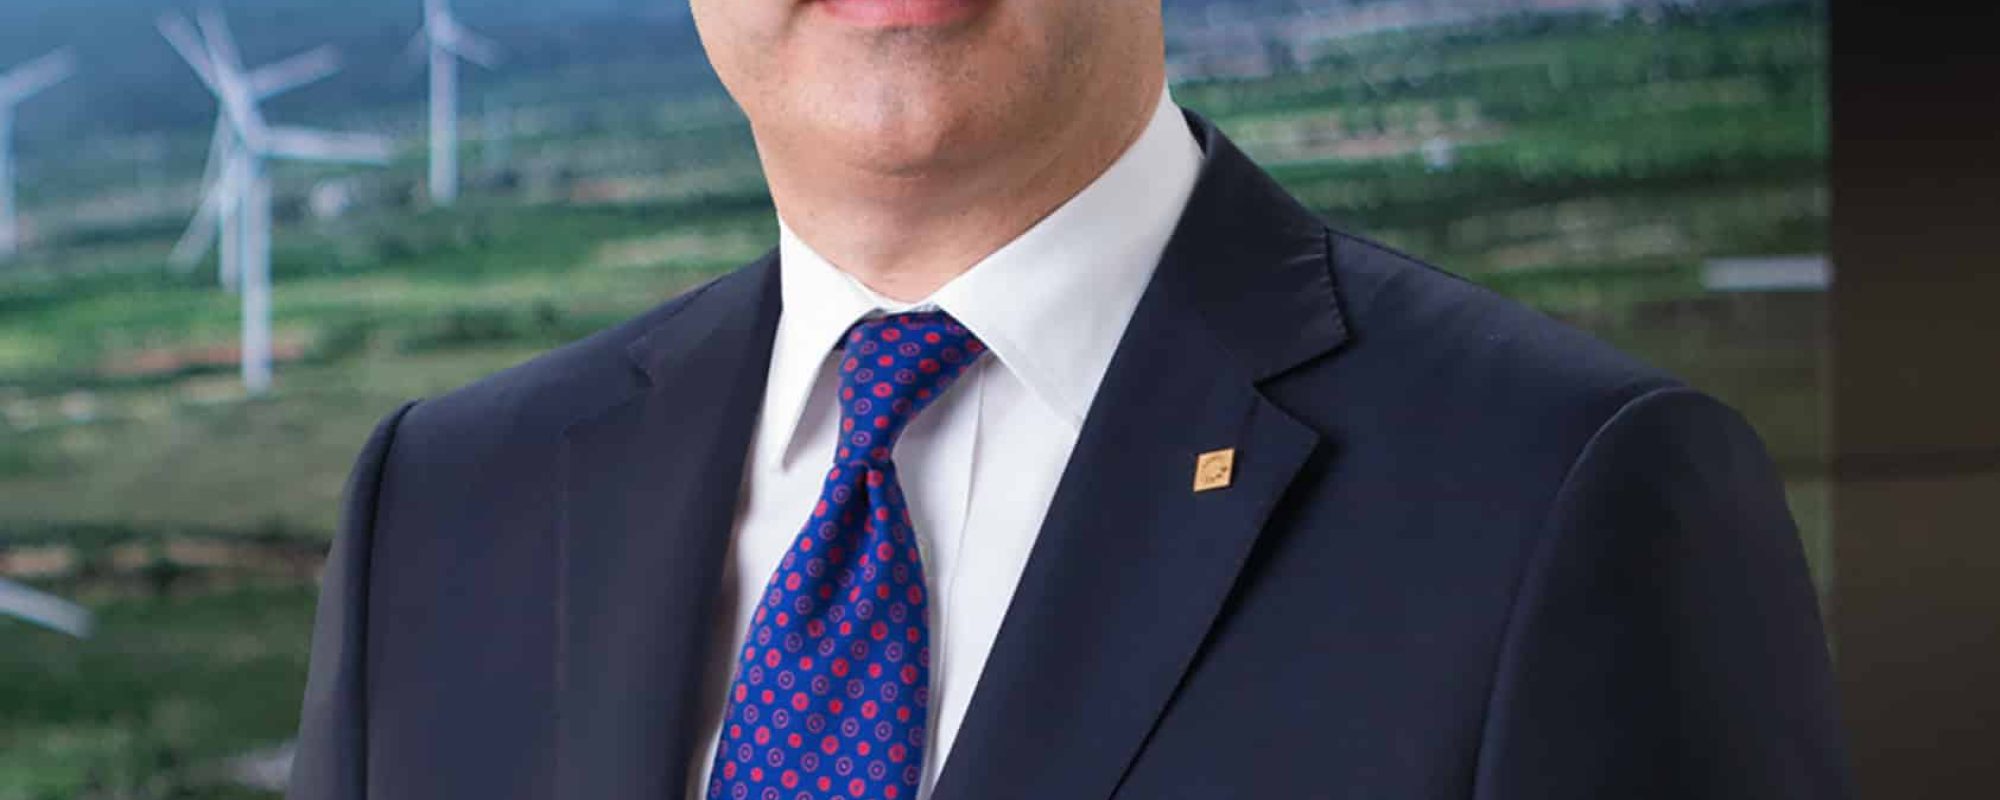 Christopher Paniagua, presidente ejecutivo del Banco Popular Dominicano